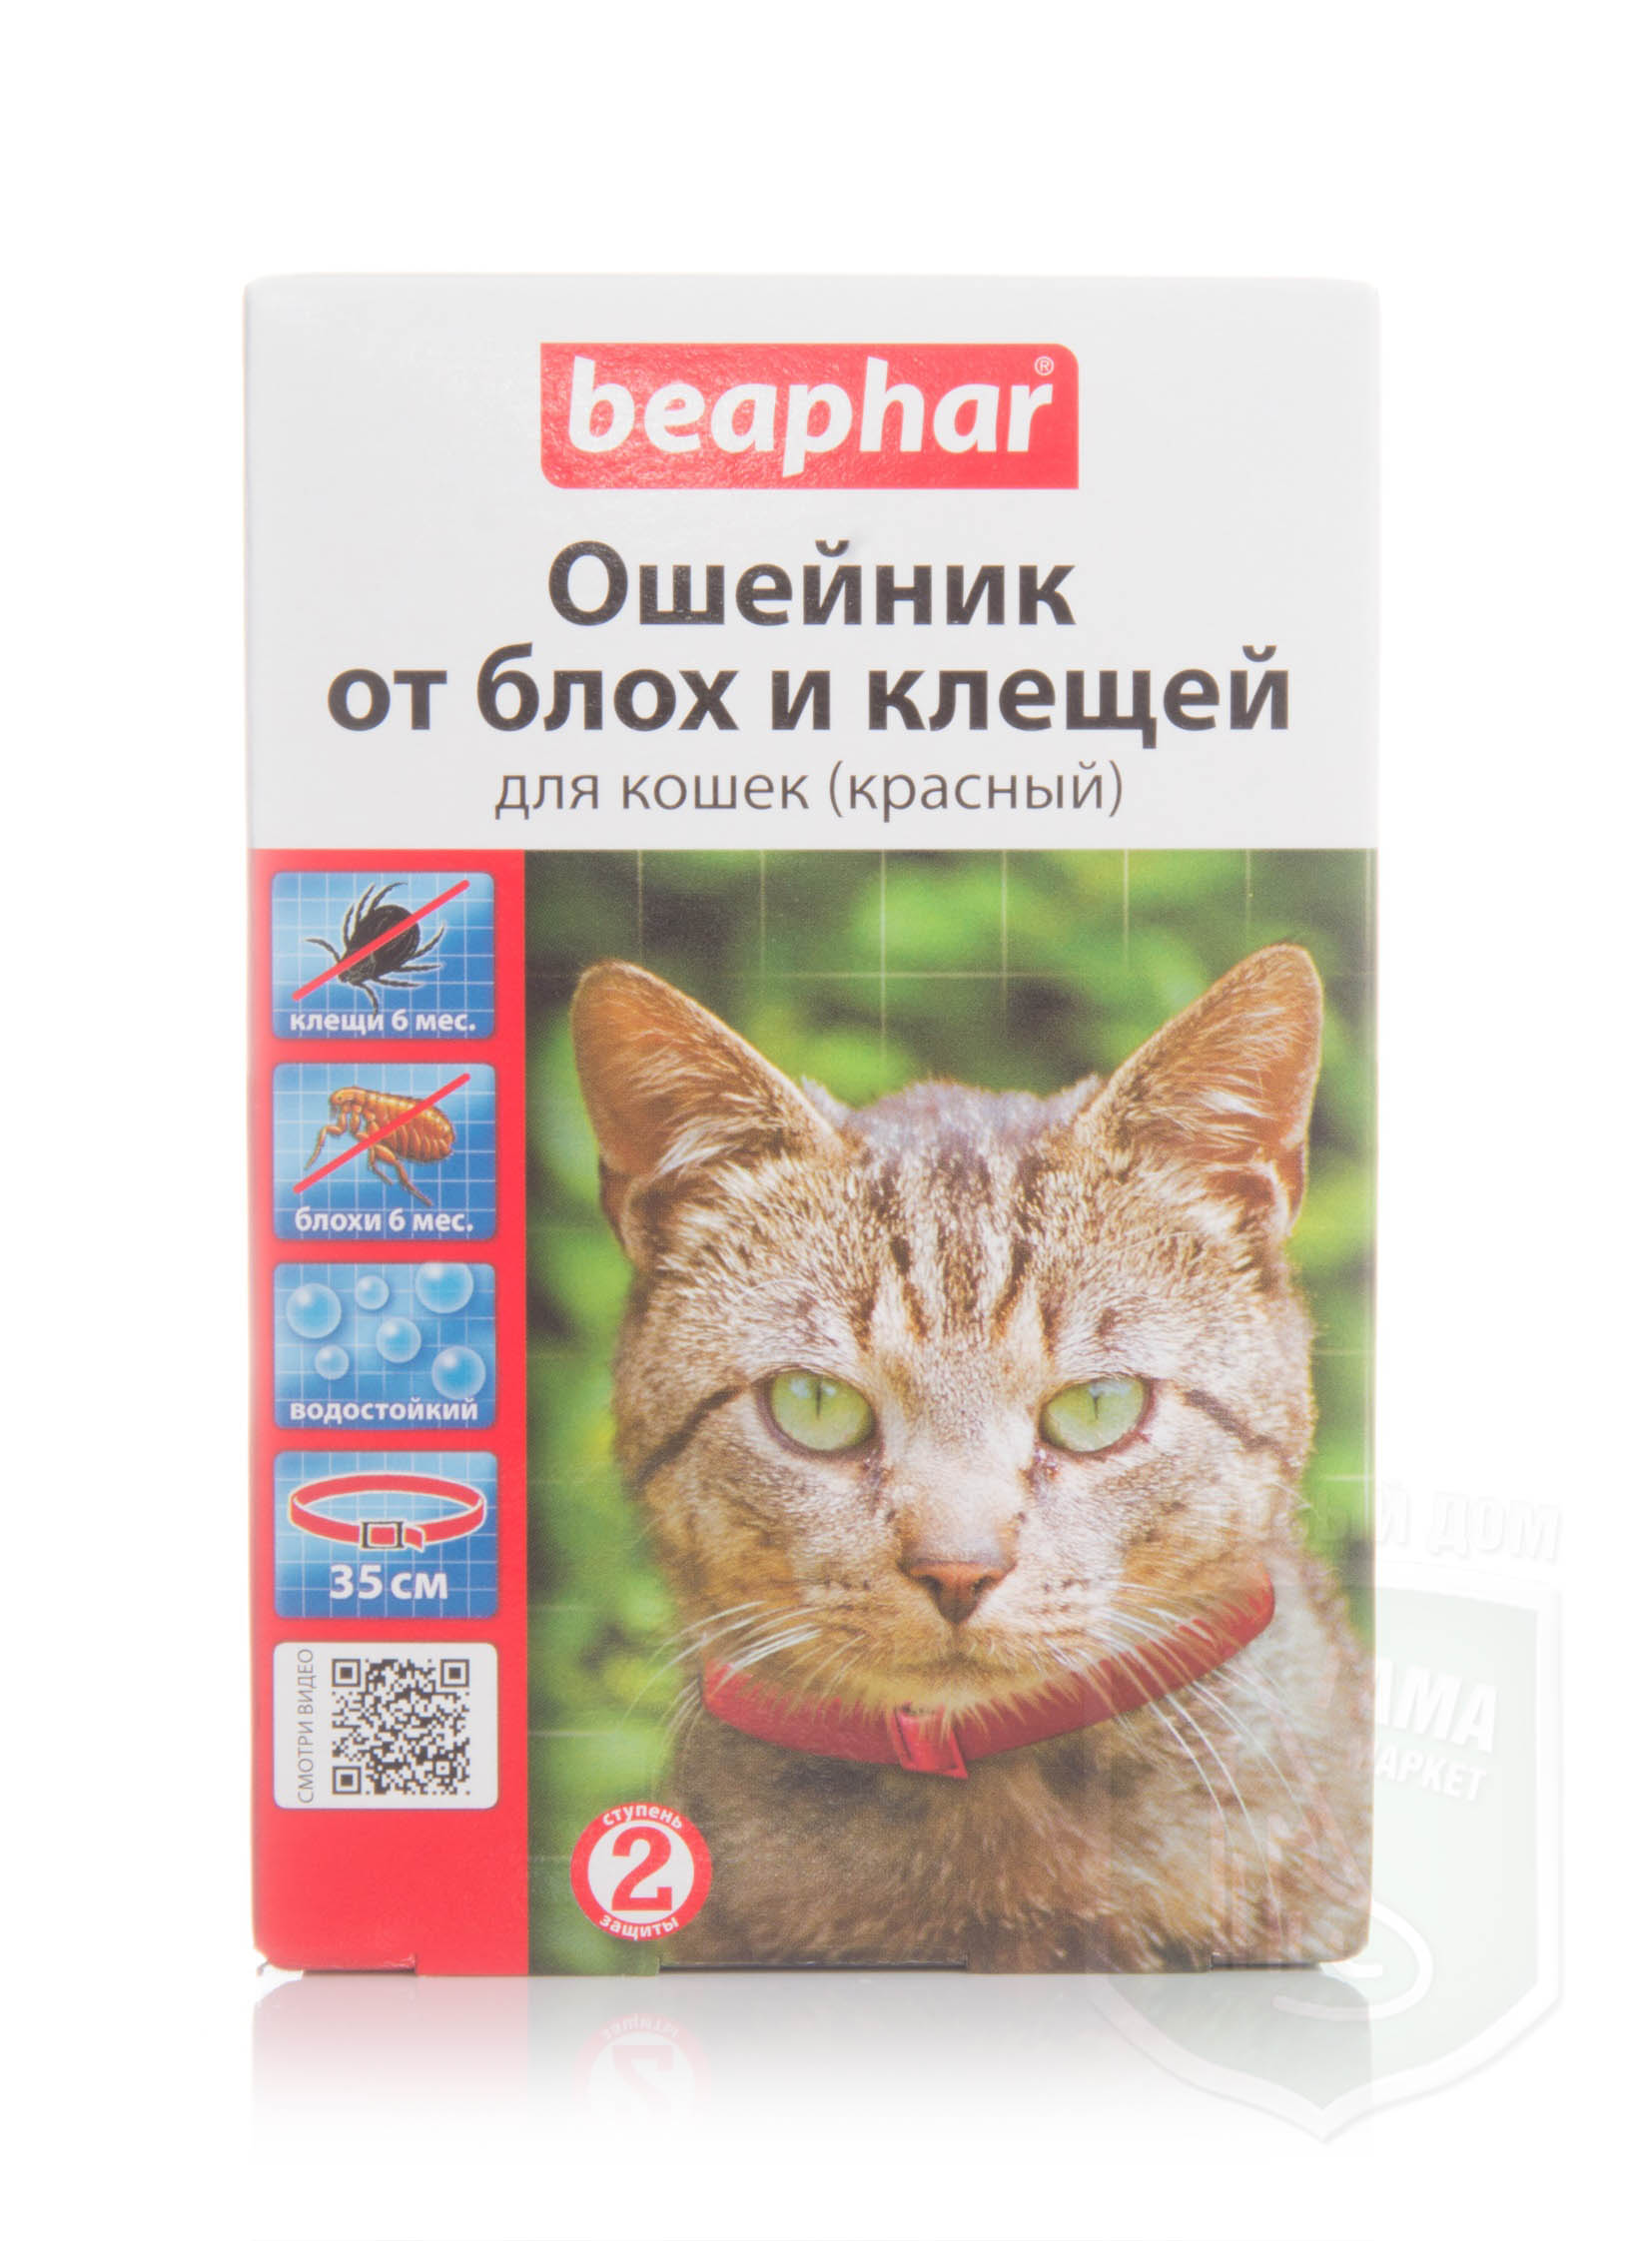 Ошейник для кошек отзывы ветеринаров. Ошейник от блох для кошек Beaphar. Беафар ошейник для кошек красный. Беафар ошейник для котят. Beaphar ошейник от блох и клещей для кошек.